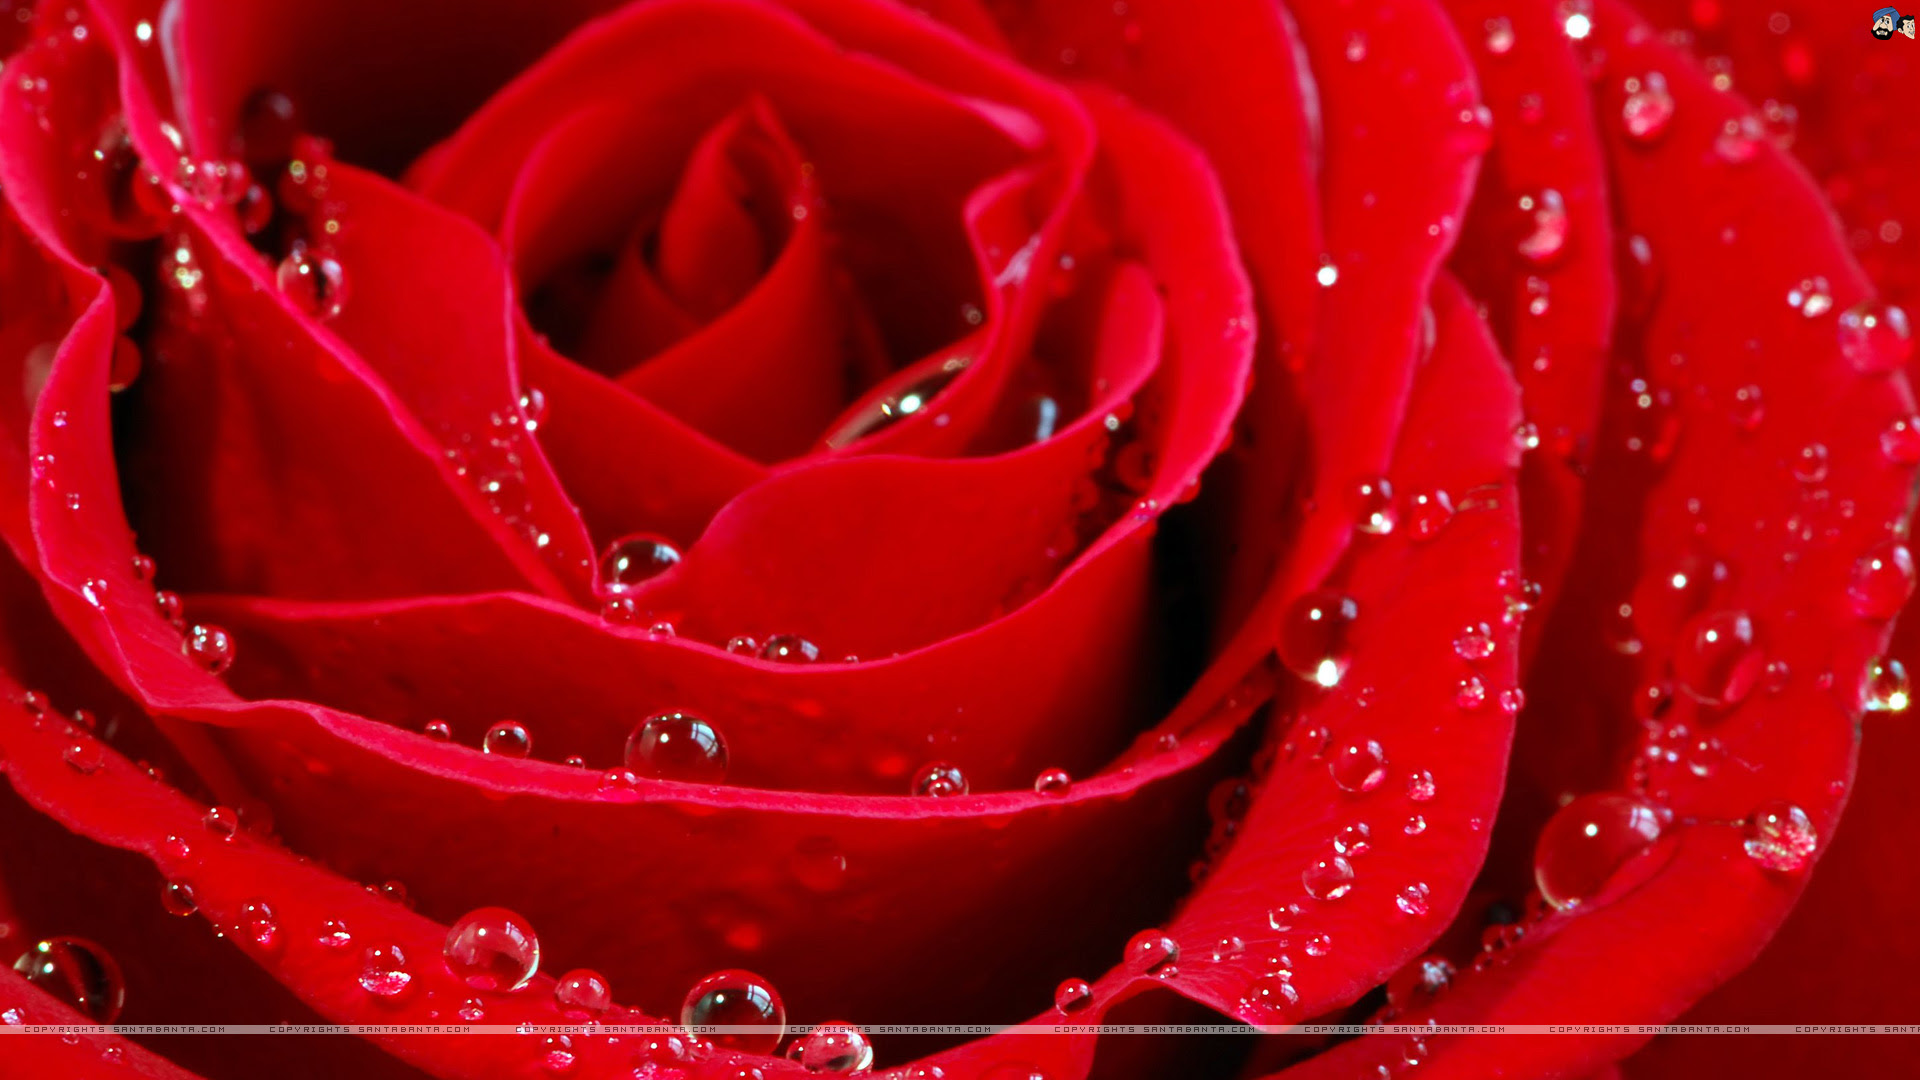 rose wallpaper: Red Rose Wallpaper Free Download